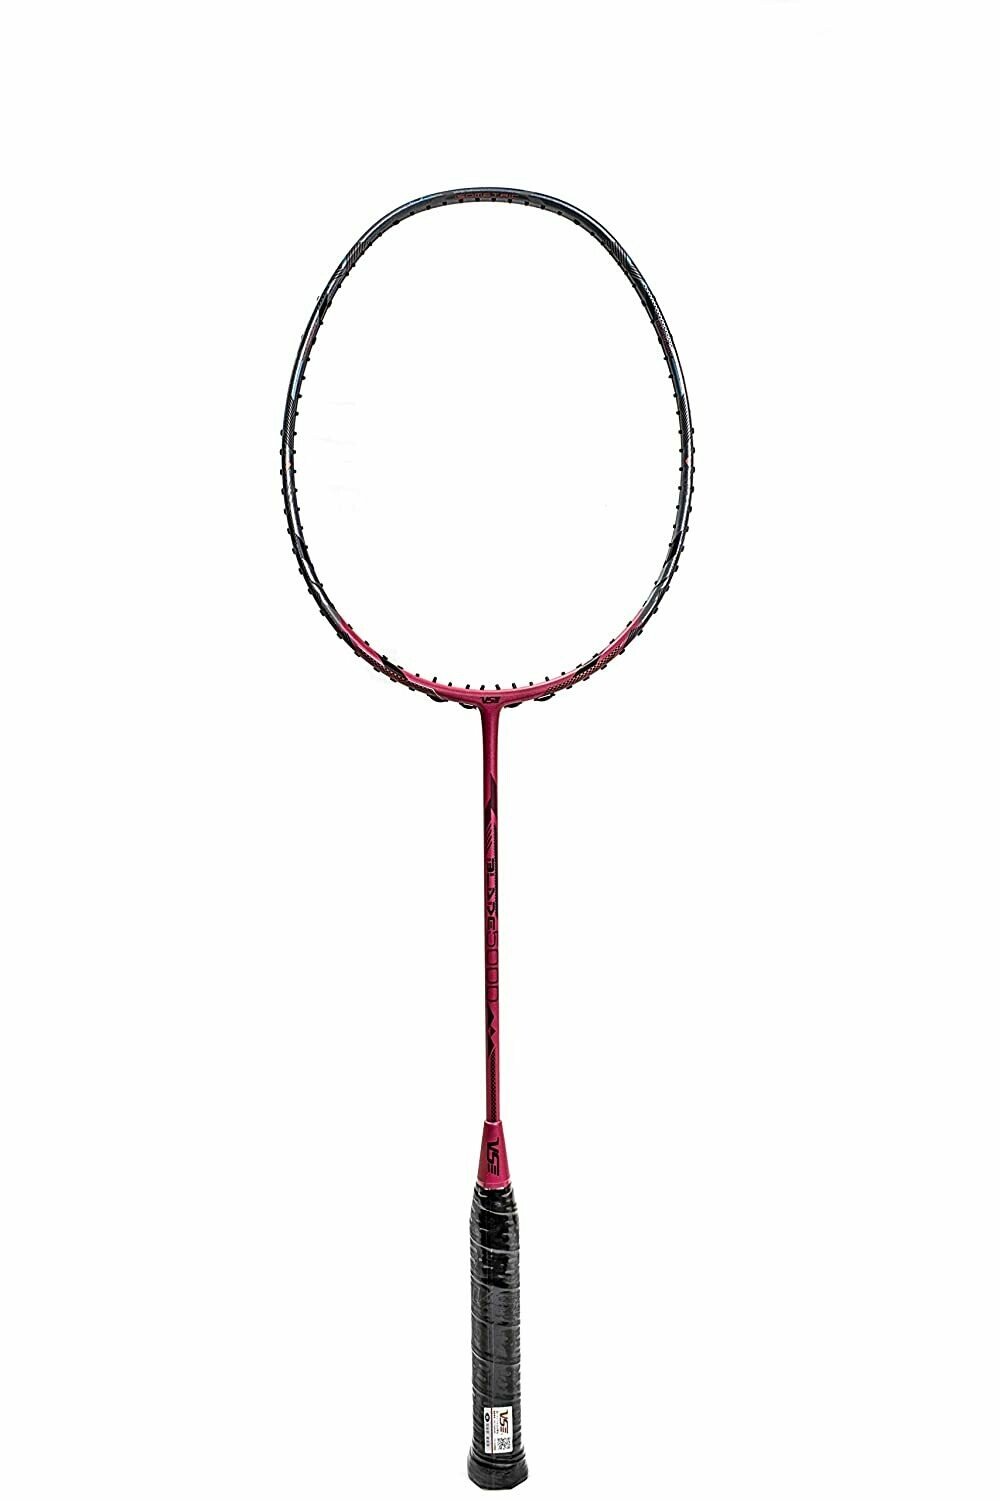 VSE Blade 5000 Badminton Racquet